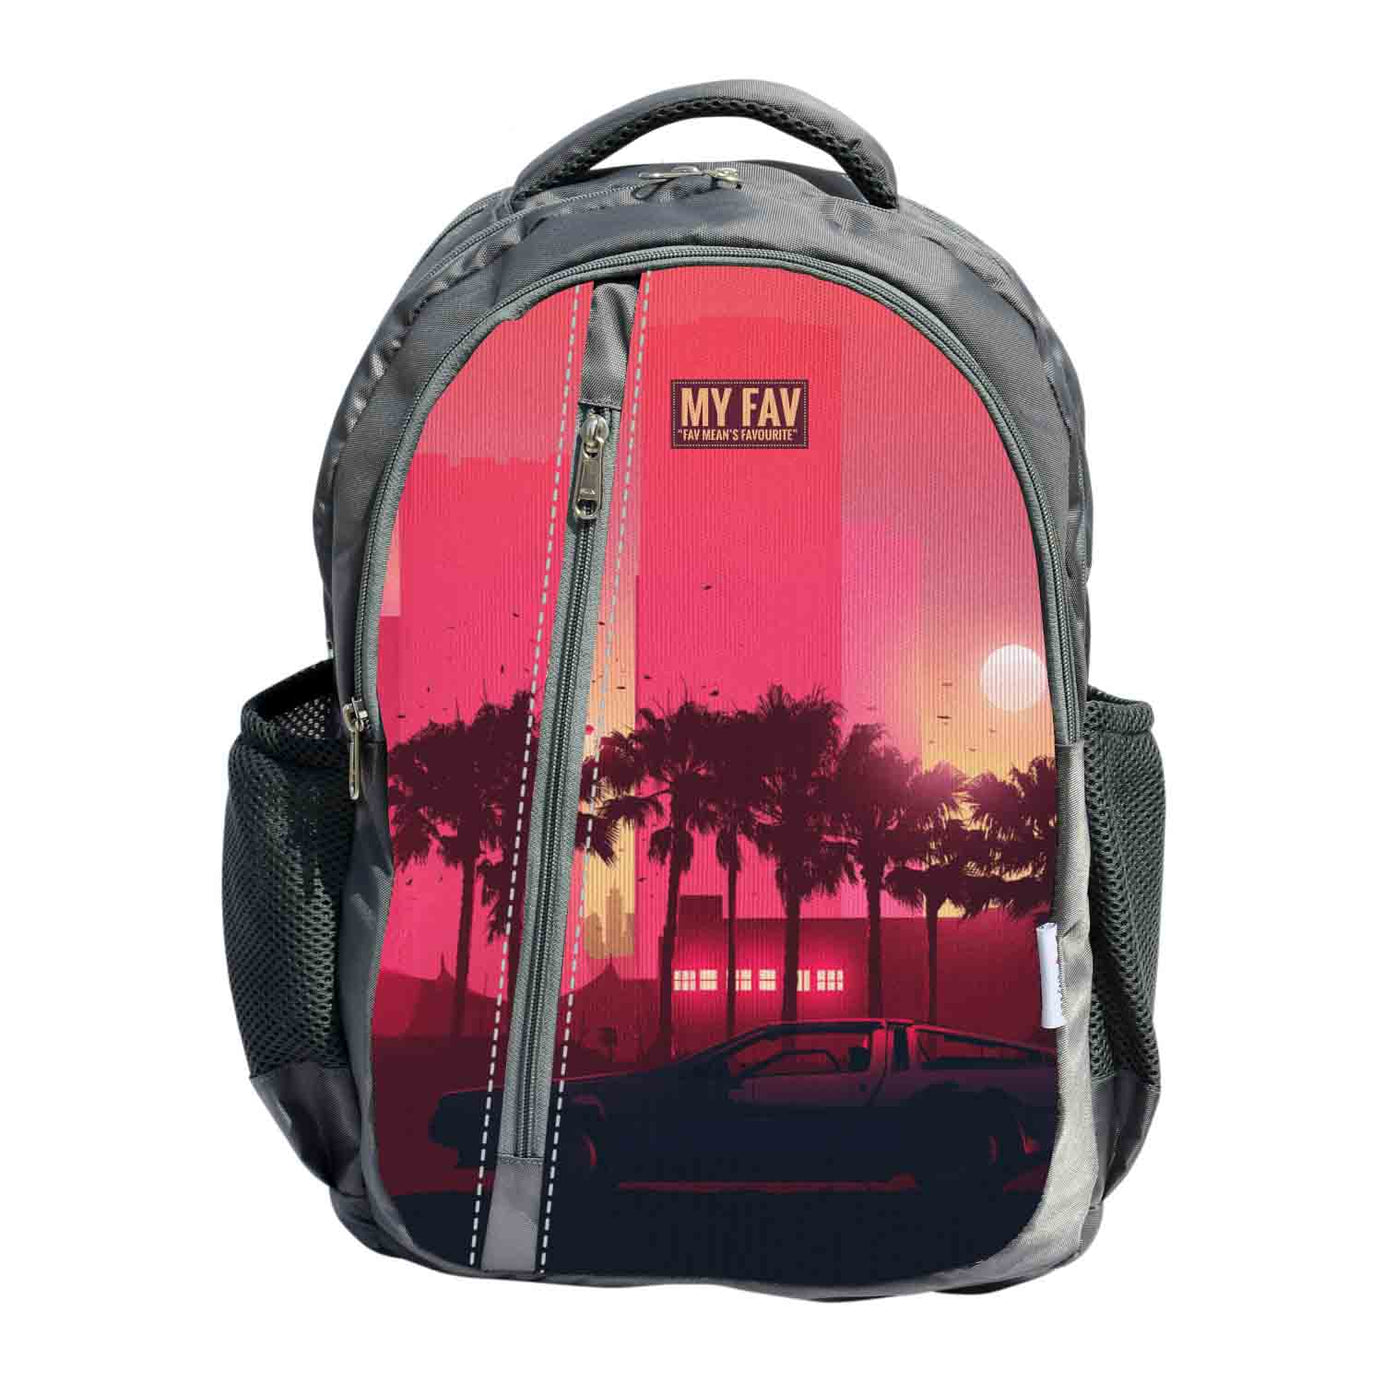 My Fav Scenery Print Laptop Backpack For Men Women / School Bag For Boys Girls